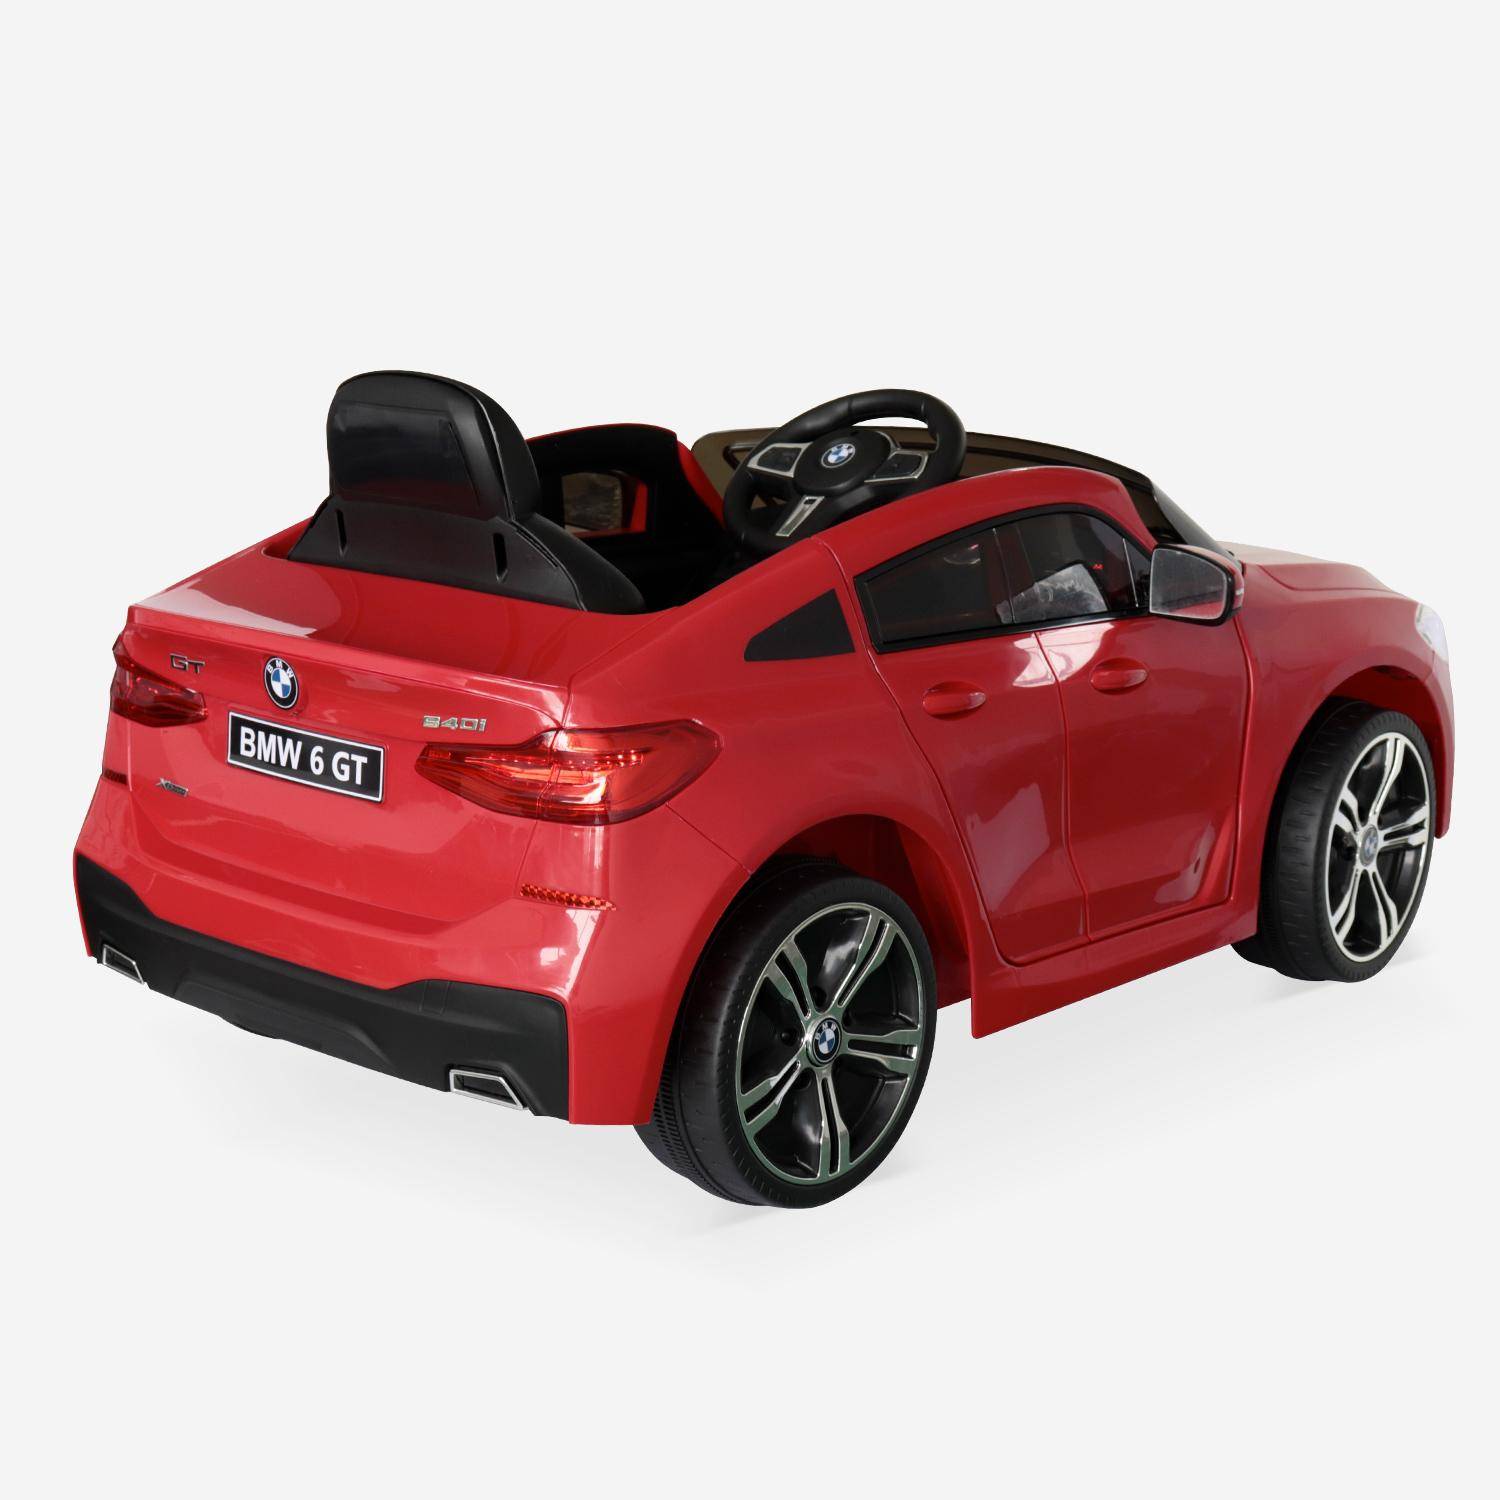 BMW Série 6 GT rouge, voiture électrique pour enfants 12V 4 Ah, 1 place, avec autoradio et télécommande Photo3